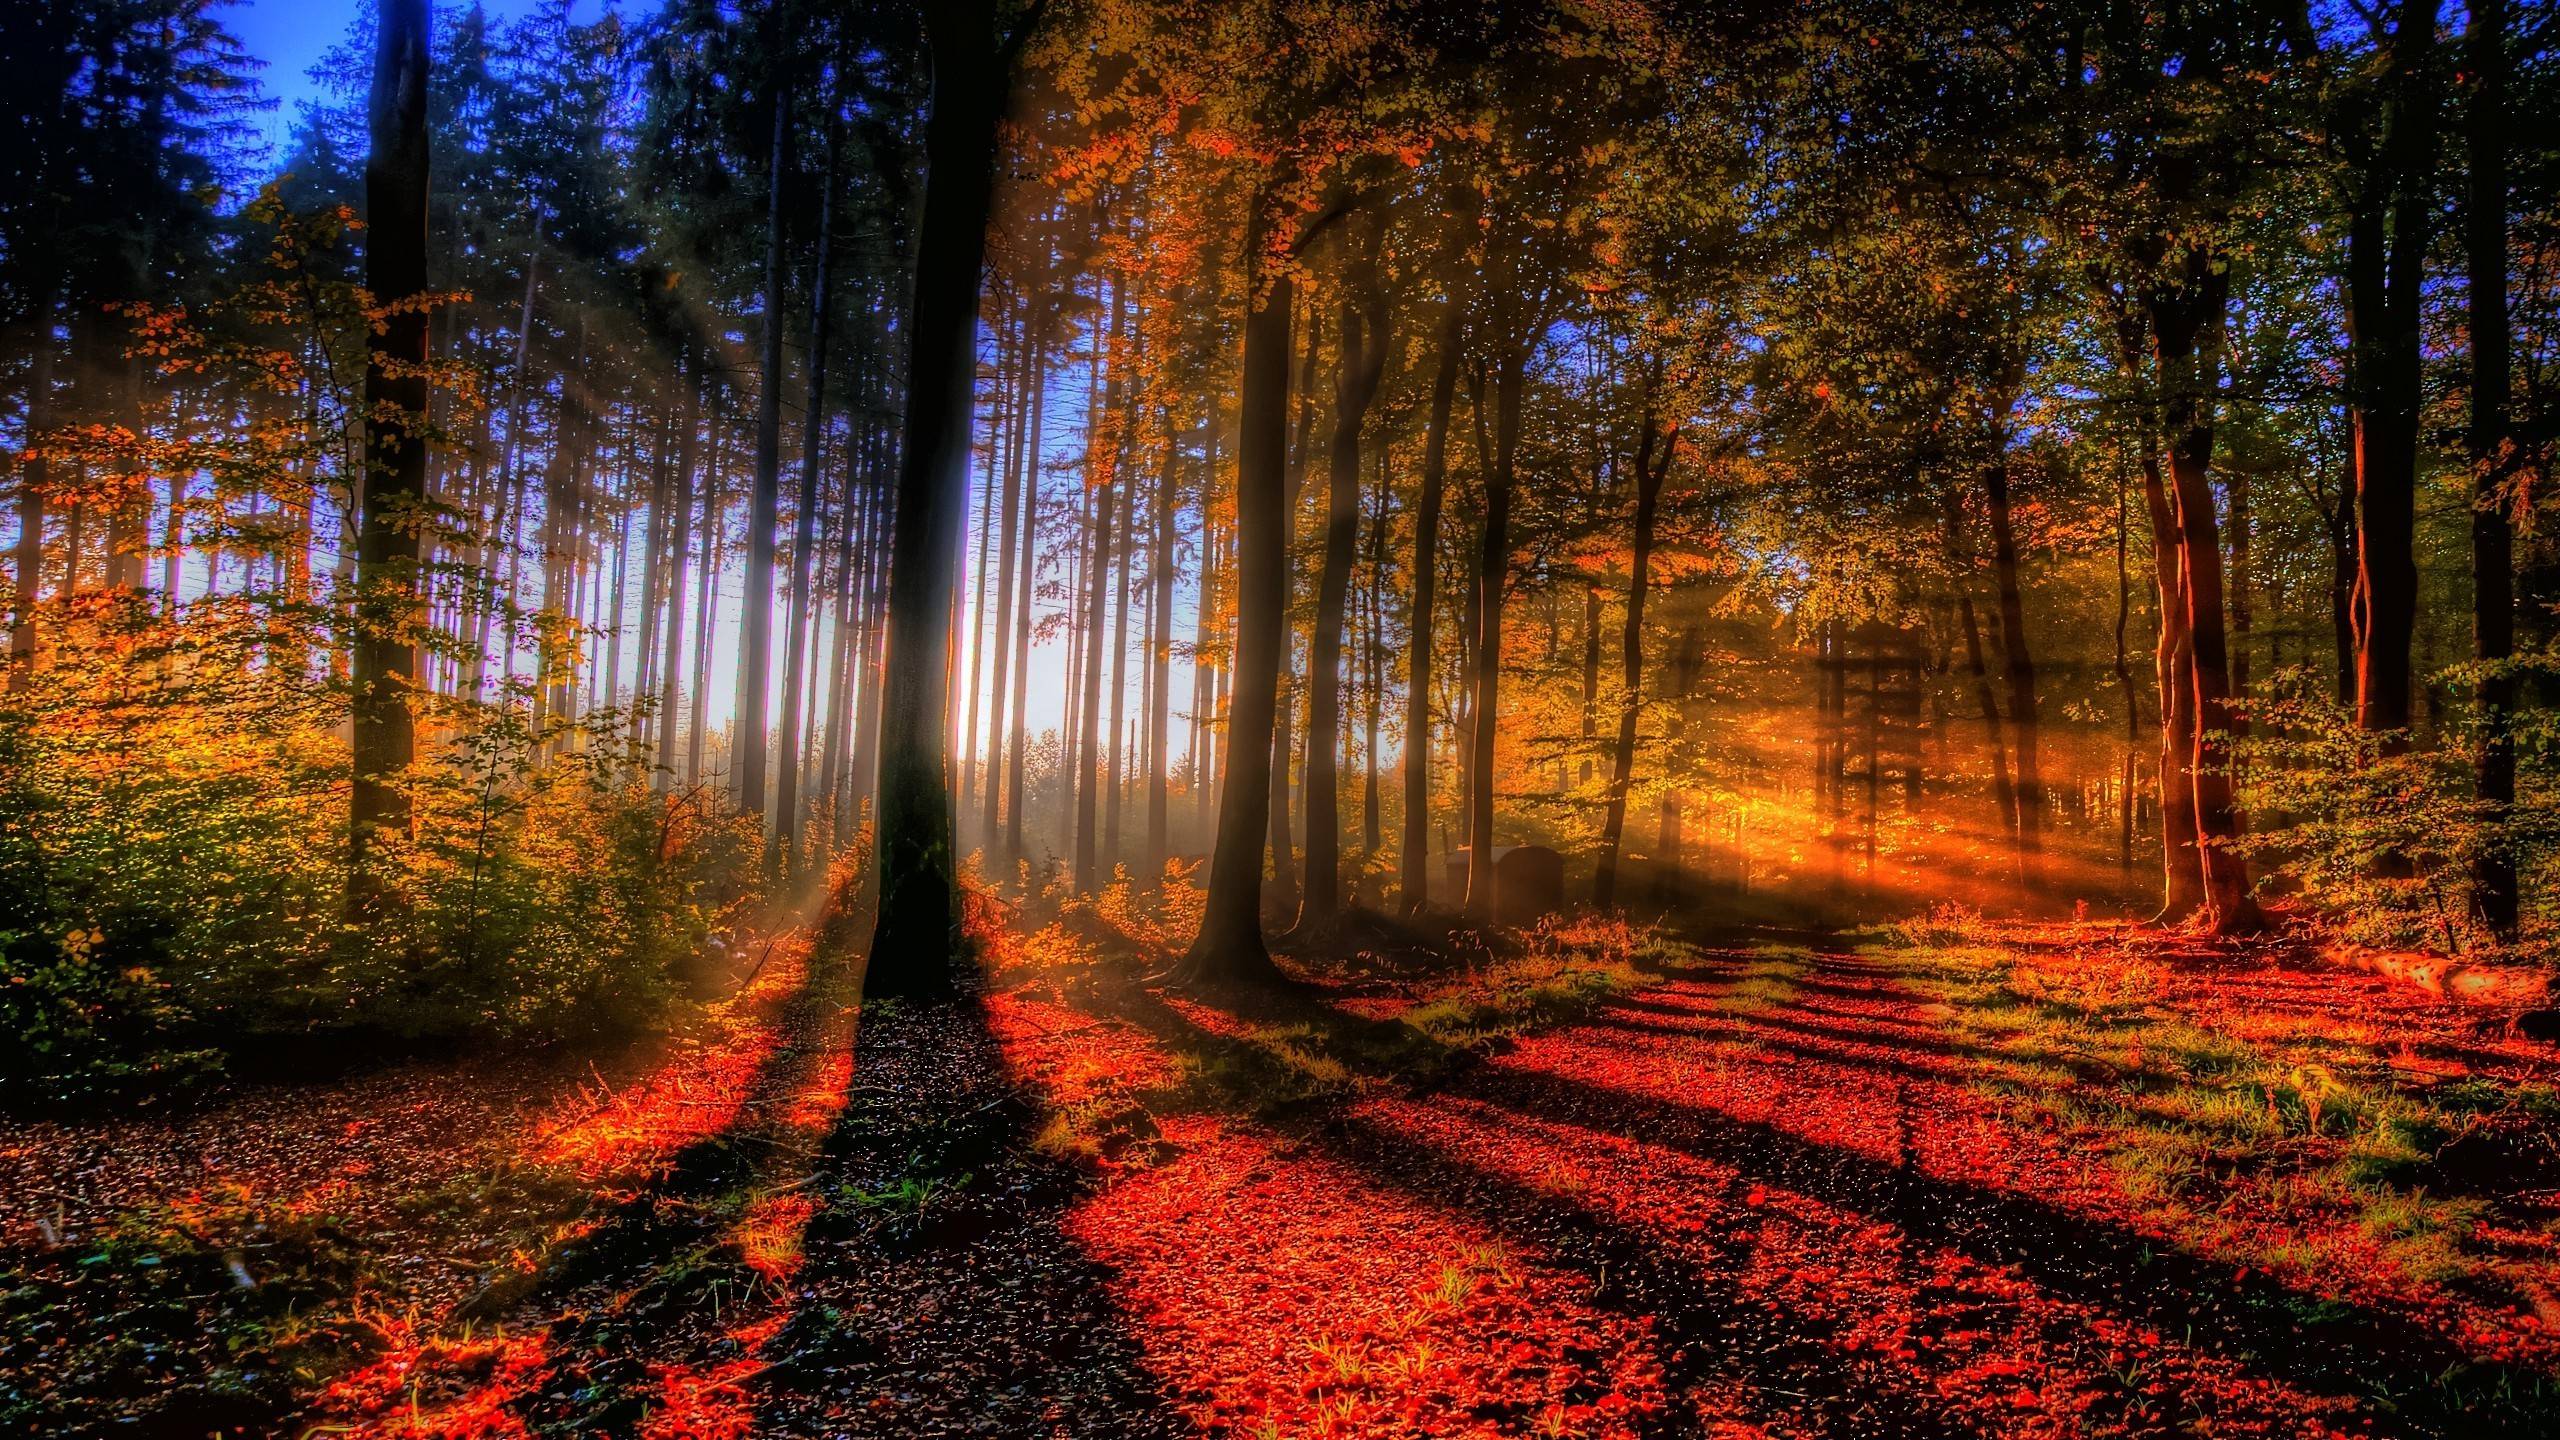 Sunlit autumn forest Wallpaper #